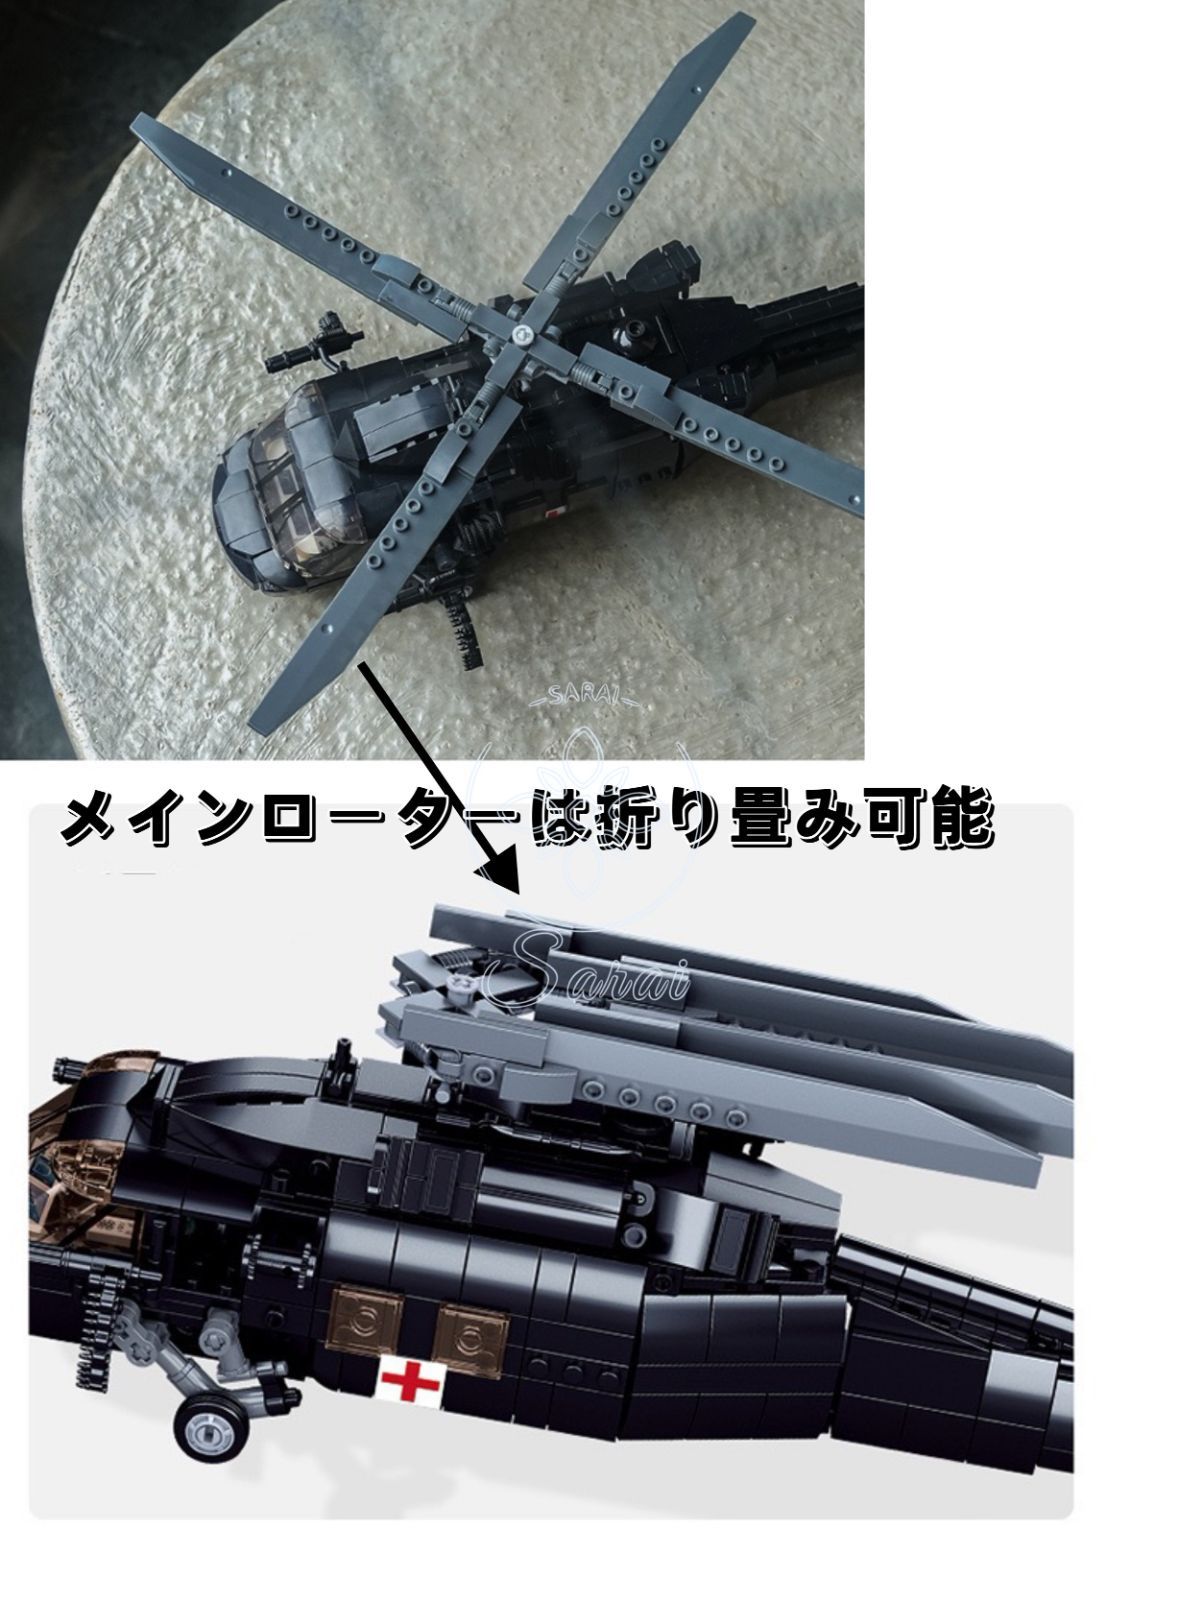 【大型】 UH-60 ブラックホーク グレーカラー レゴ 互換 ブロックトイ